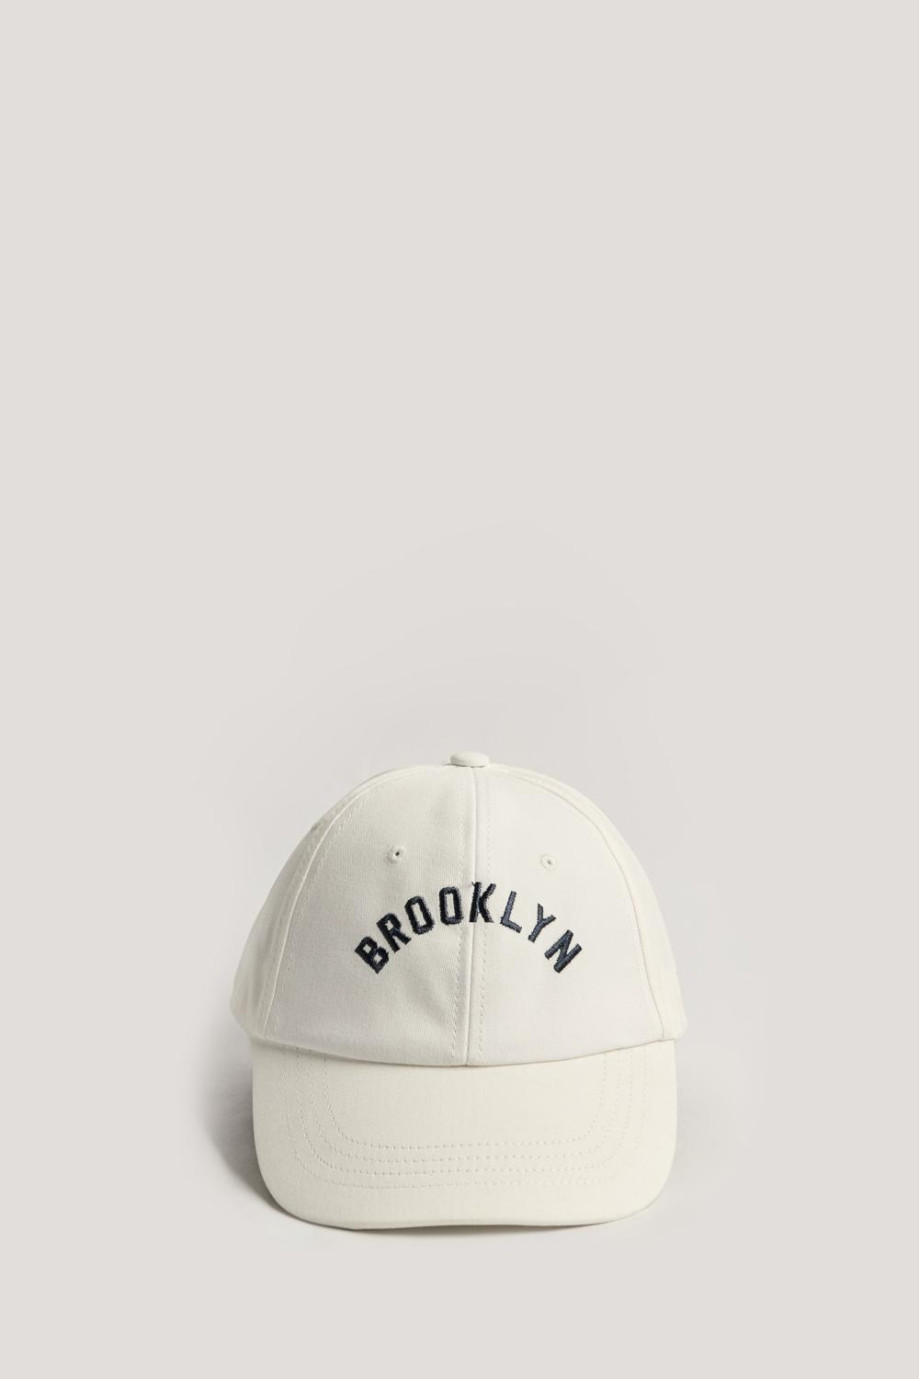 Cachucha beisbolera crema con bordado college de Brooklyn